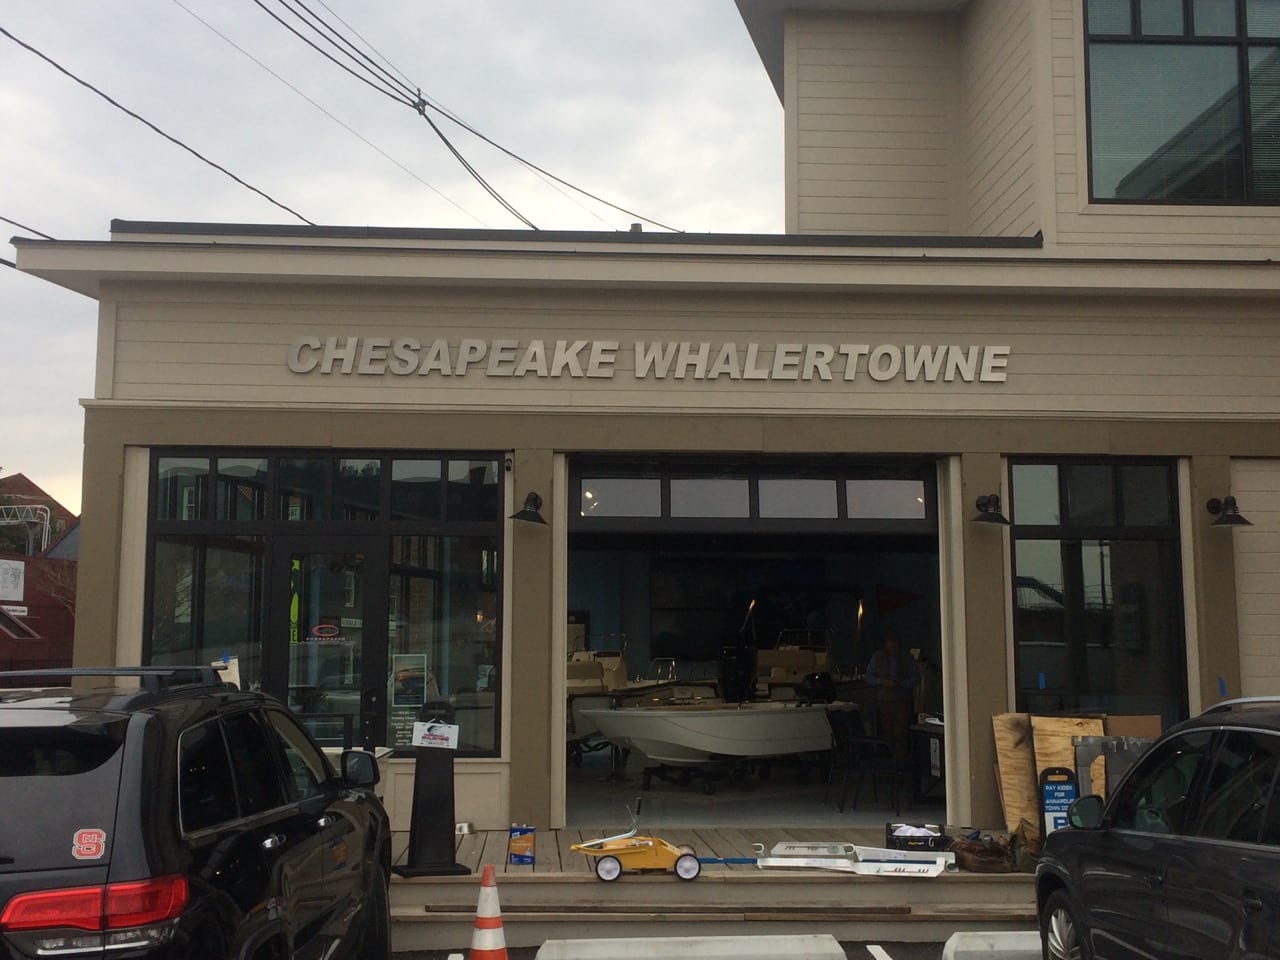 Chesapeake Whalertowne